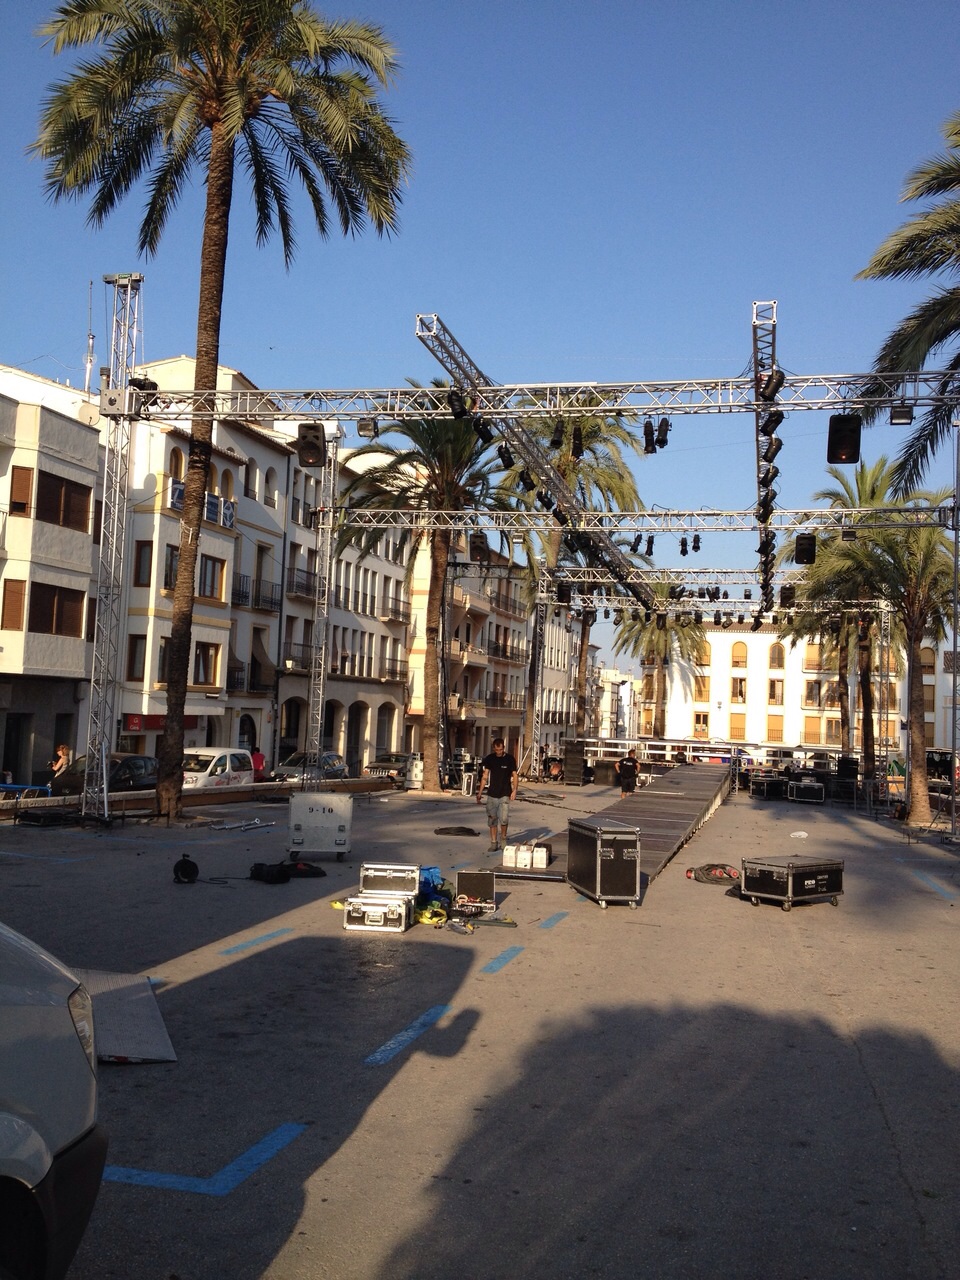 Scenario festivities @ Benissa, Alicante (Spain)